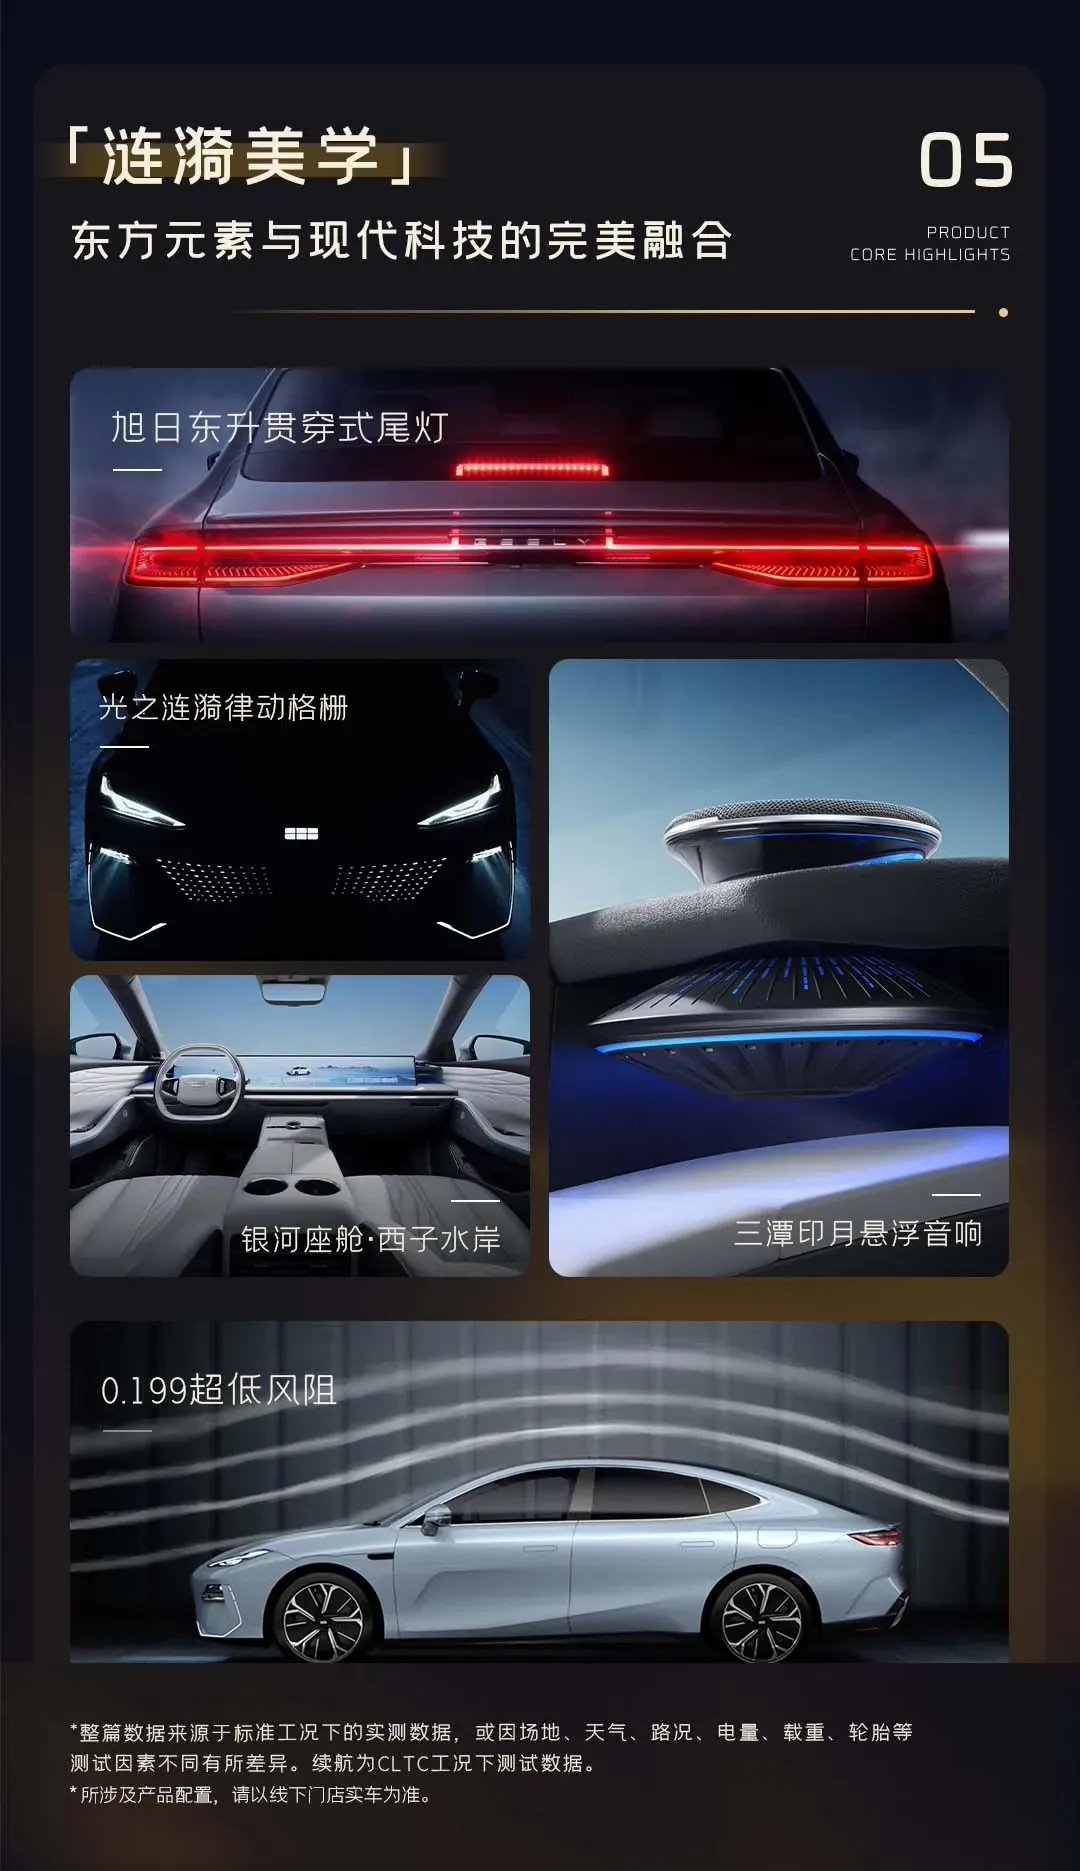 【爱车基地】吉利银河 E8 轿车 1 月 5 日上市：预售 18.8 万元起-第3张